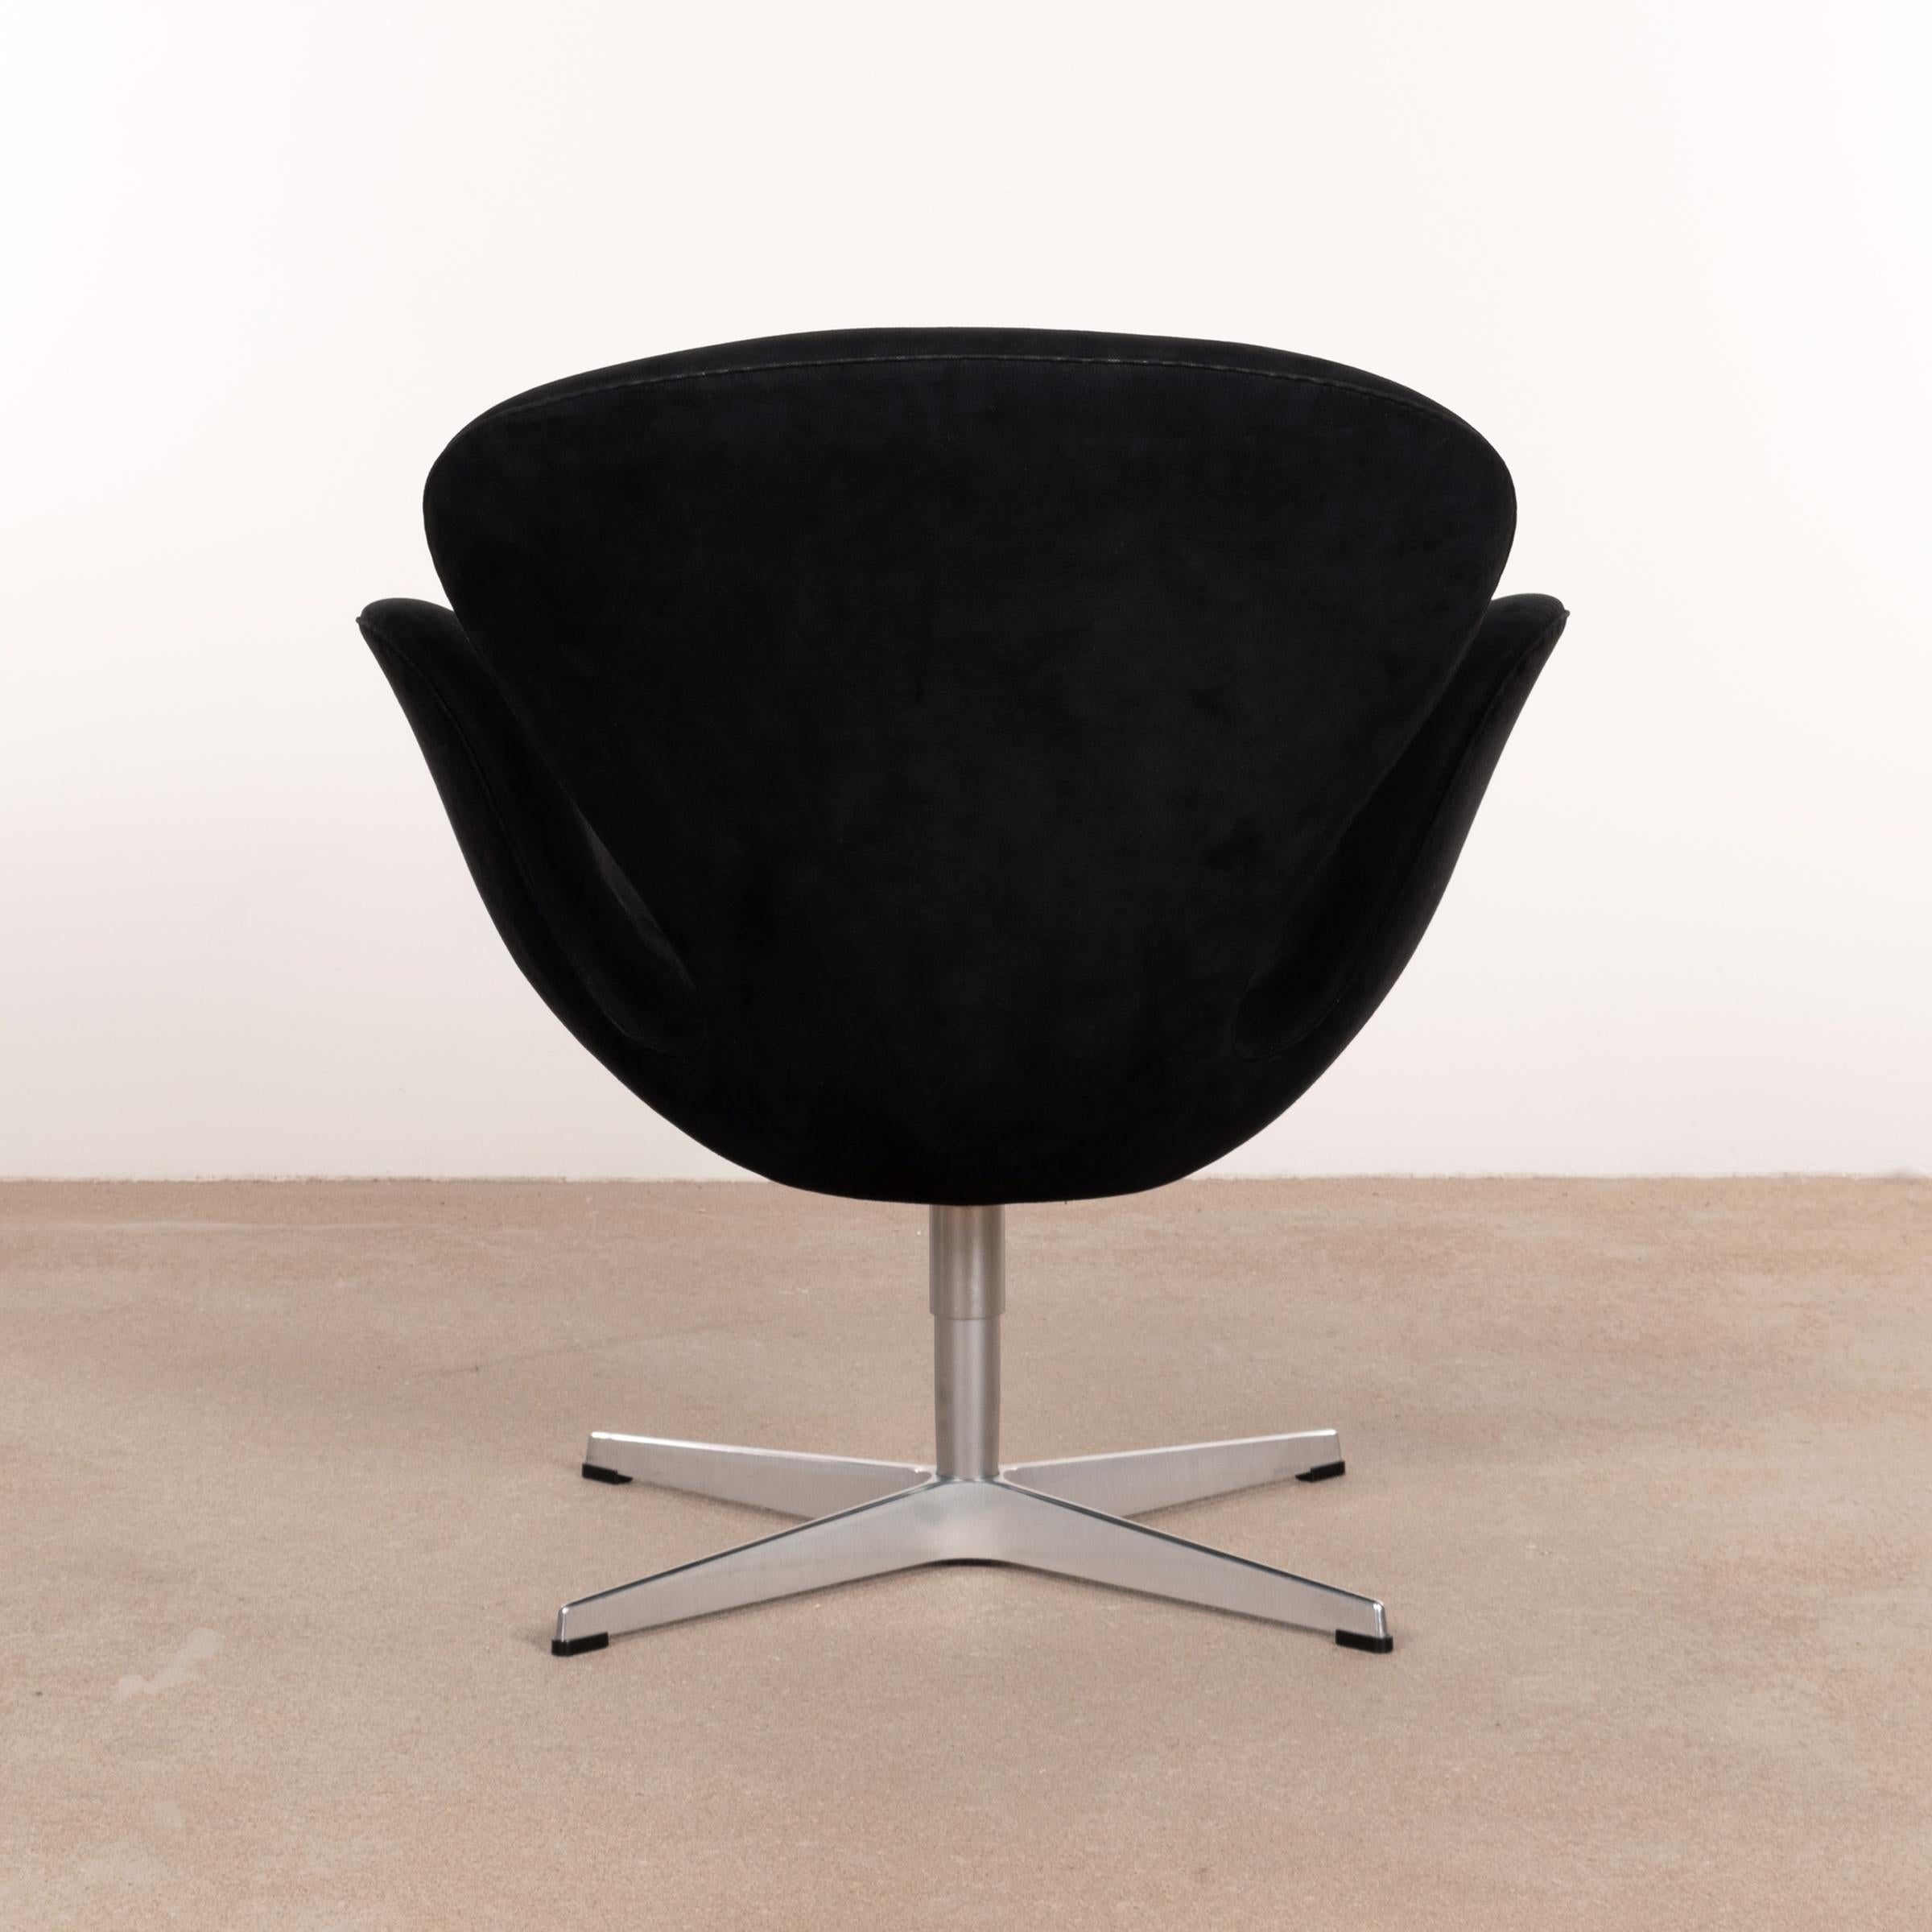 Scandinavian Modern Arne Jacobsen Swan Chair in Black Alcantara for Fritz Hansen, Denmark